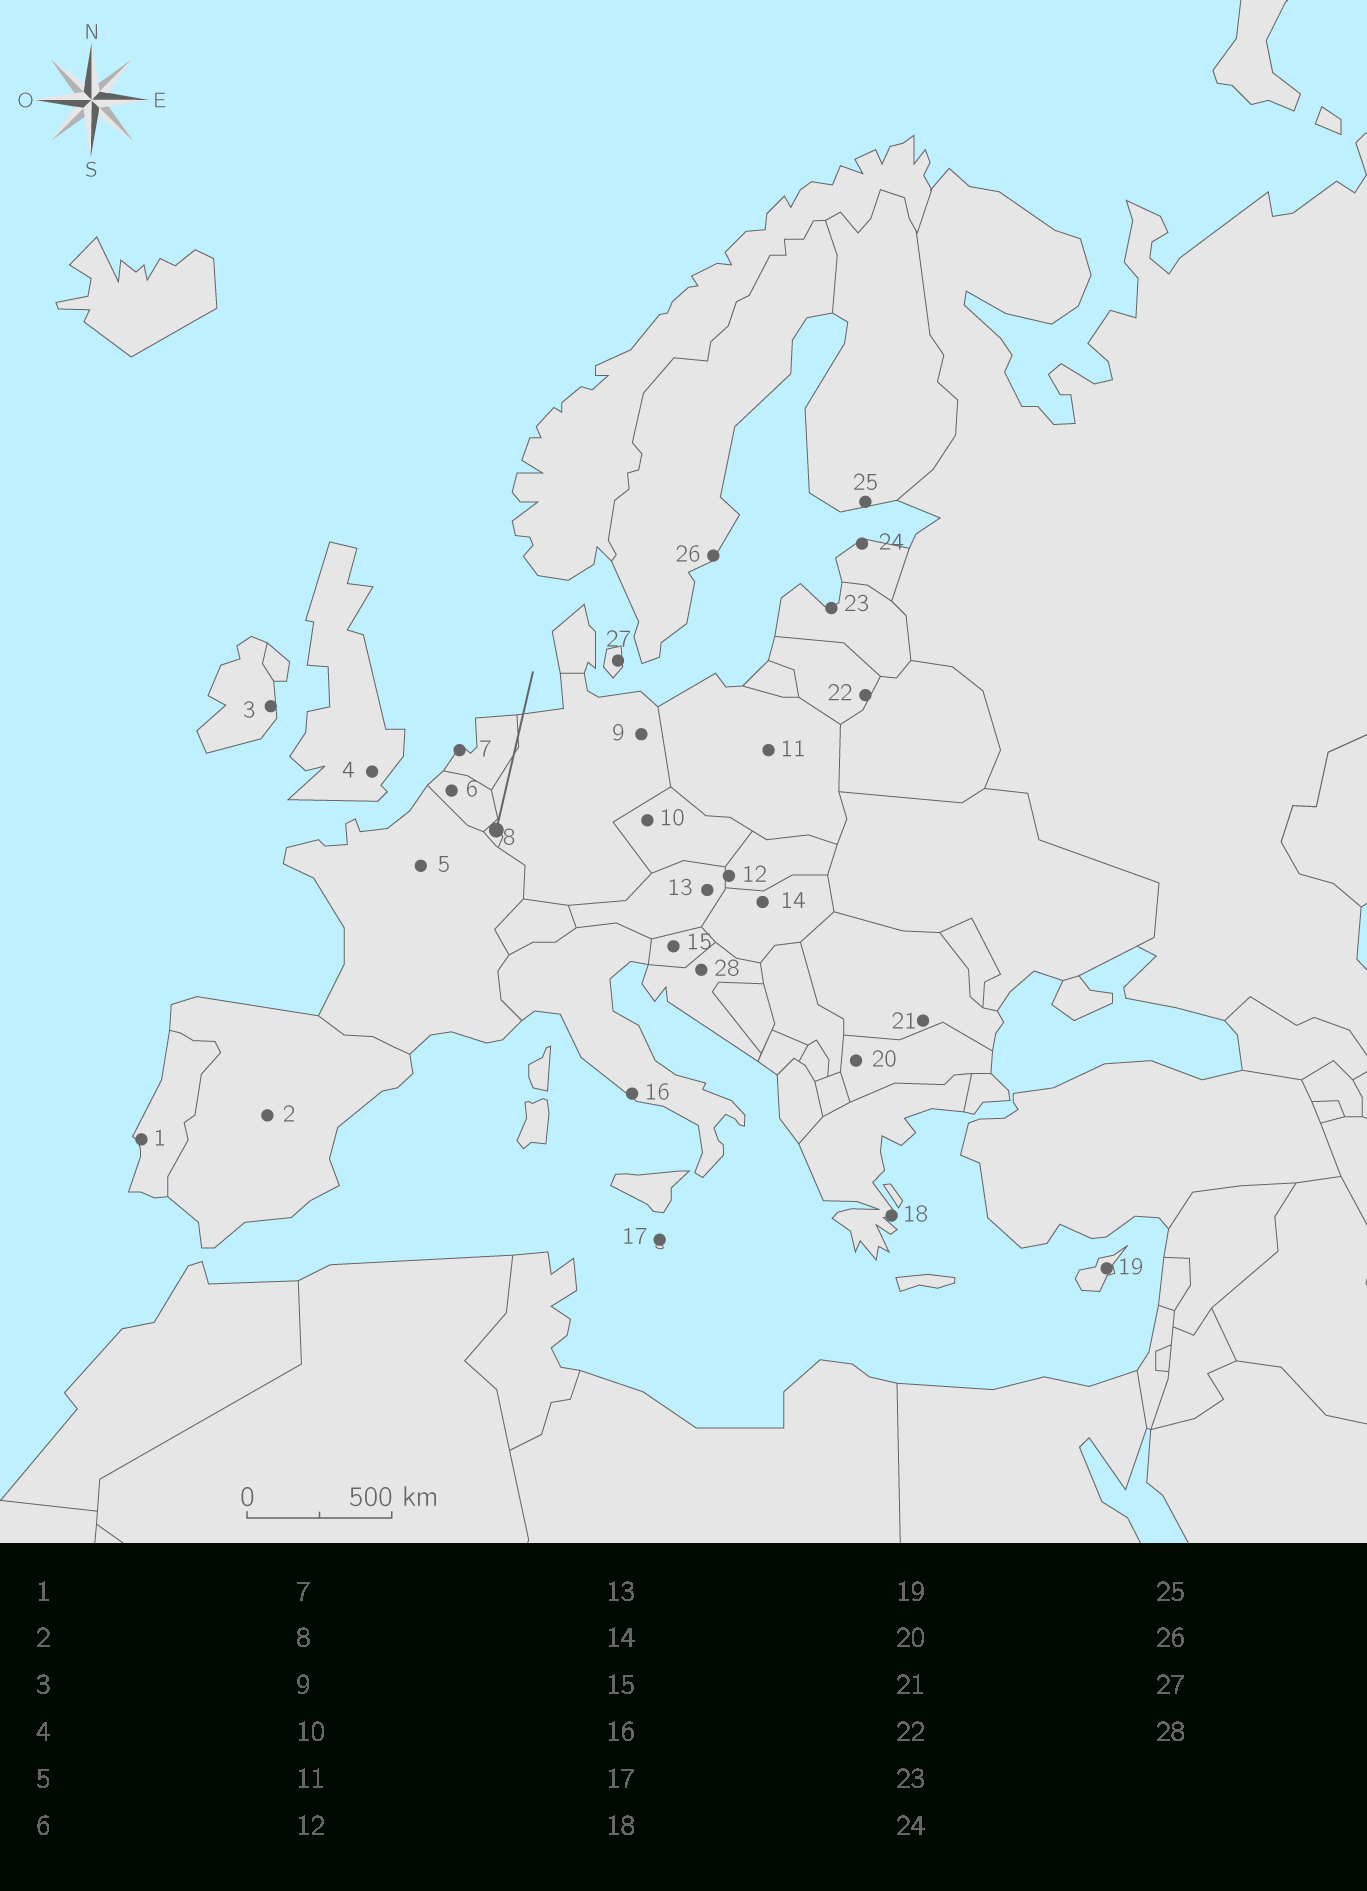 Liste Des Pays De L Union Européenne Et Leurs Capitales tout Les 28 Pays De L Union Européenne Et Leur Capitale